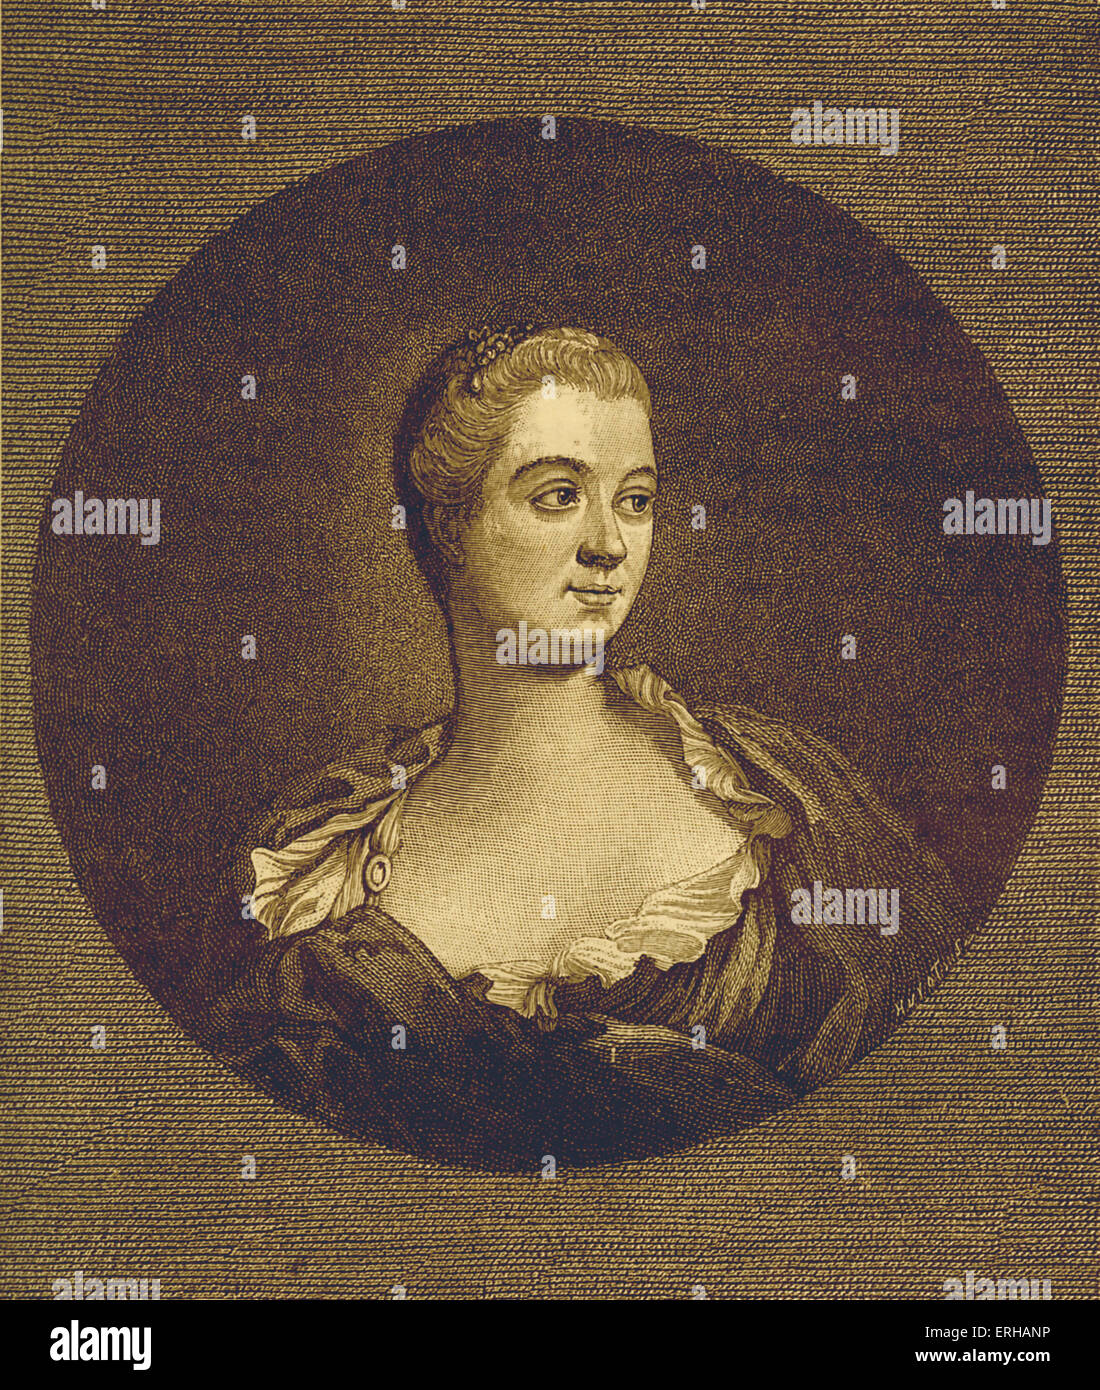 Madame de Pompadour - da incisione di J. Watson dopo la verniciatura da F. Boucher. Pseudonimo di Jeanne Antoinette Poisson.amante di Luigi XV di Francia. 1721 - 15 aprile 1764. Foto Stock